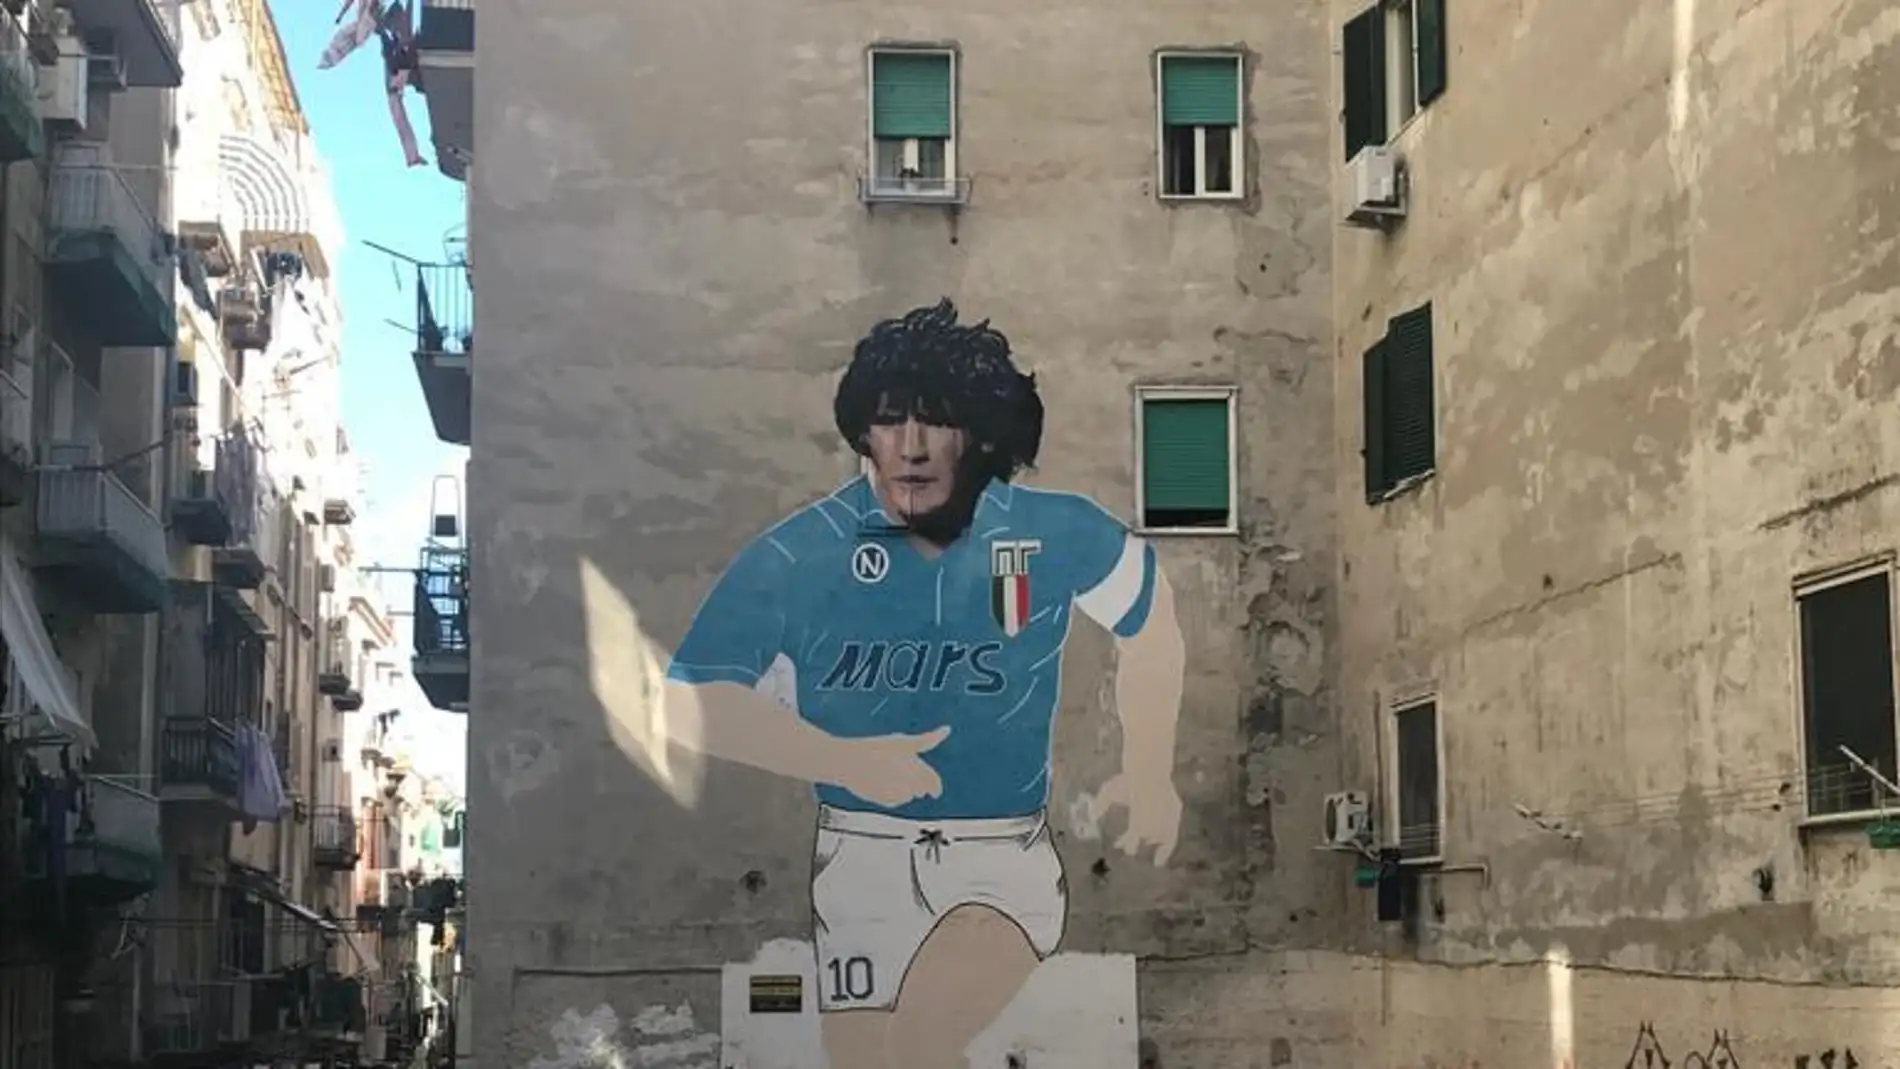 Una de las muchas referencias a Diego Armando Maradona en Nápoles.